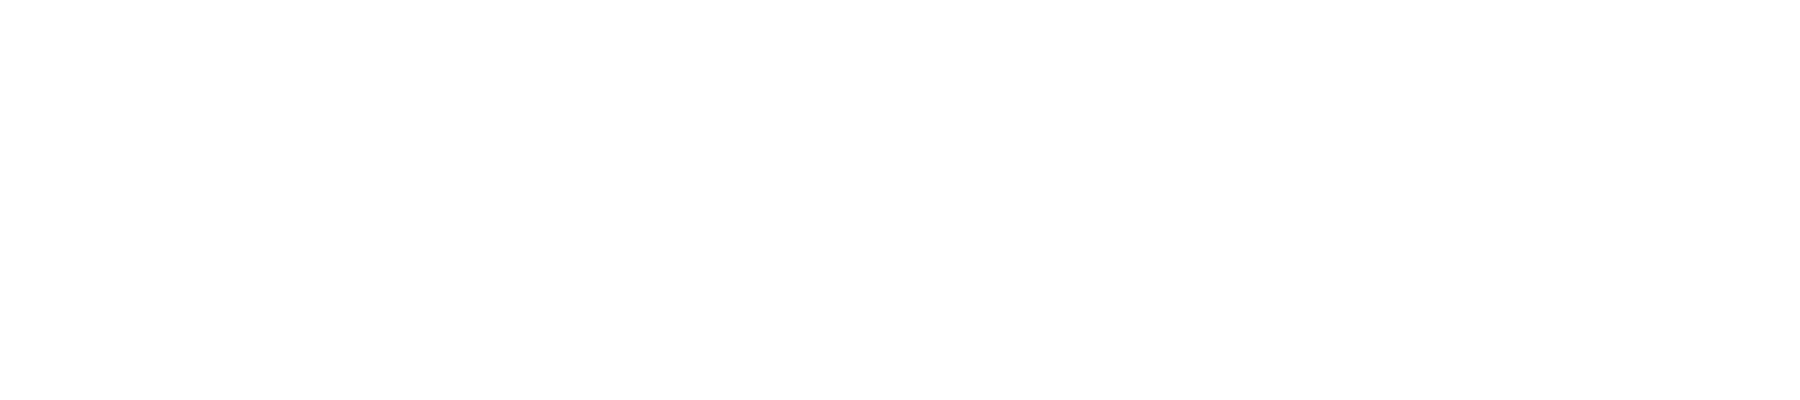 Andrew Schaw Violins